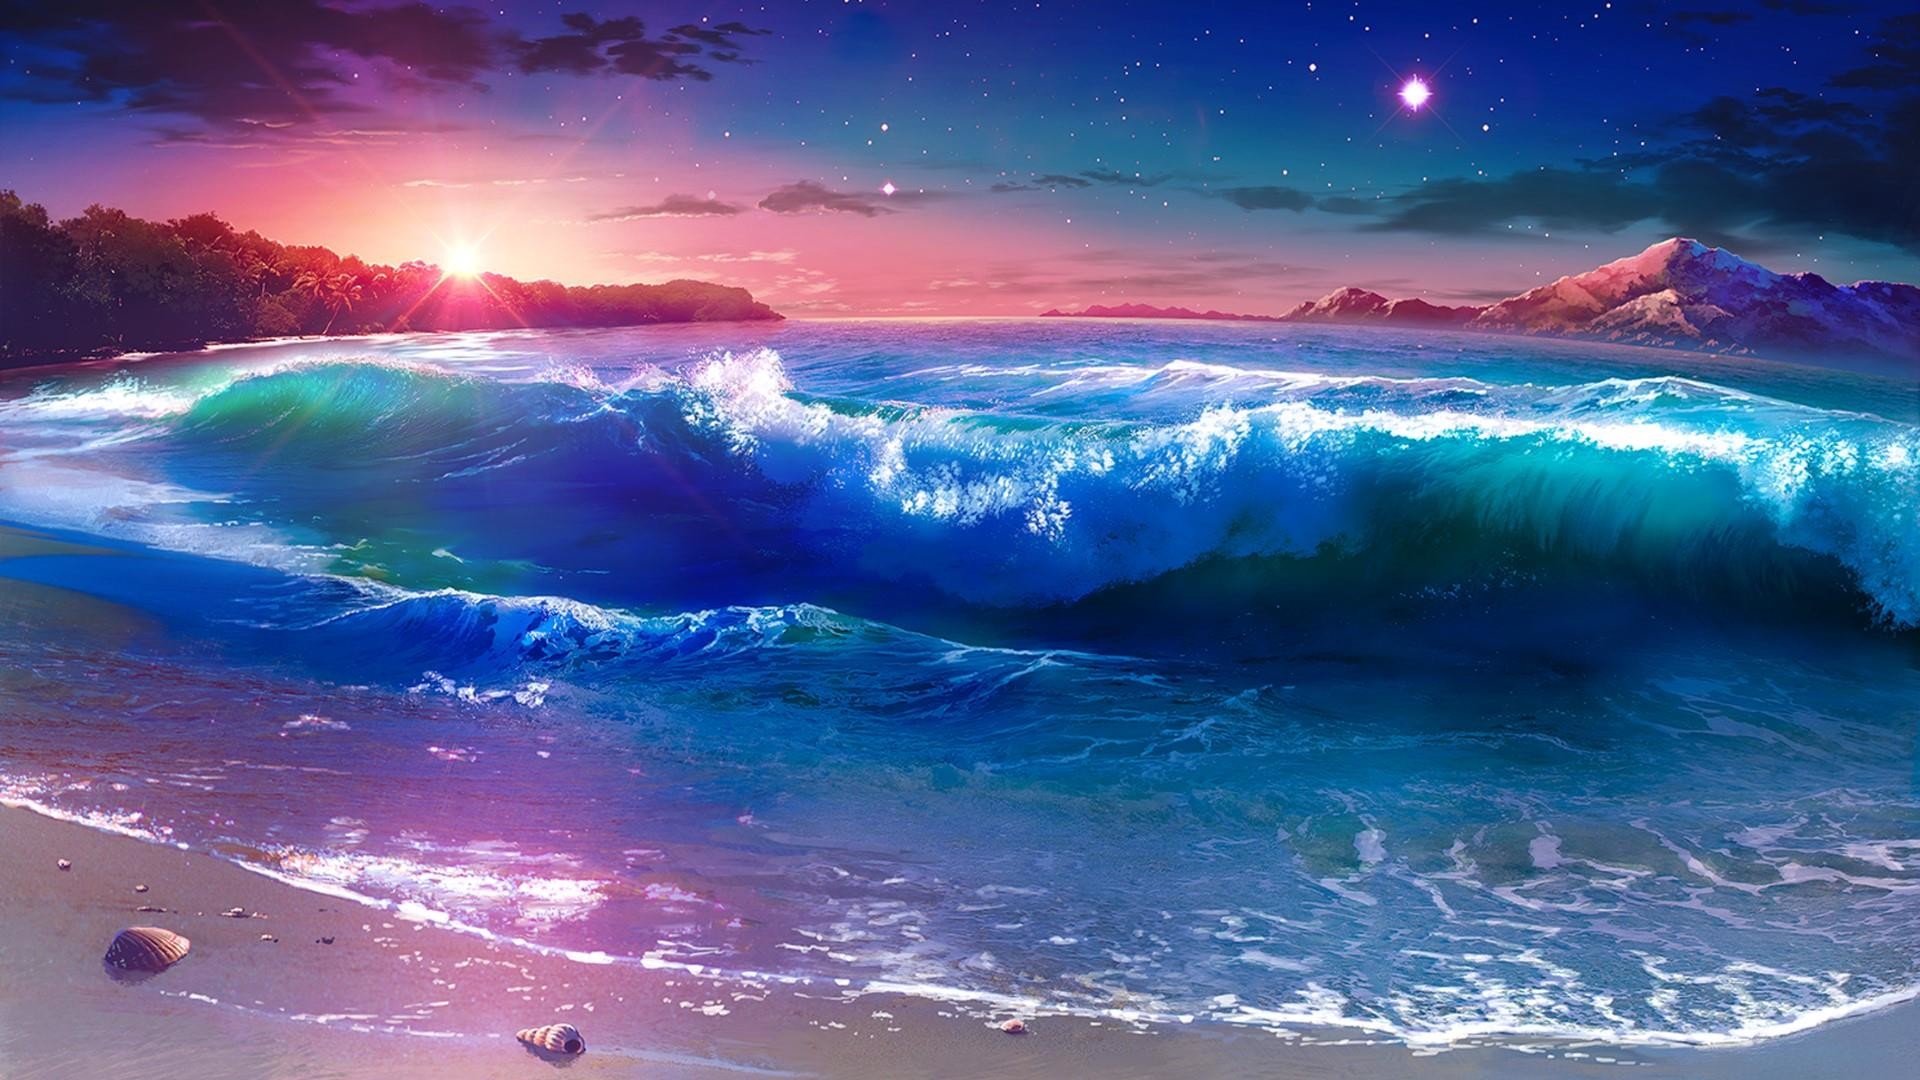 1920x1080 Starry night over the seashore - Fantasy landscape wallpaper